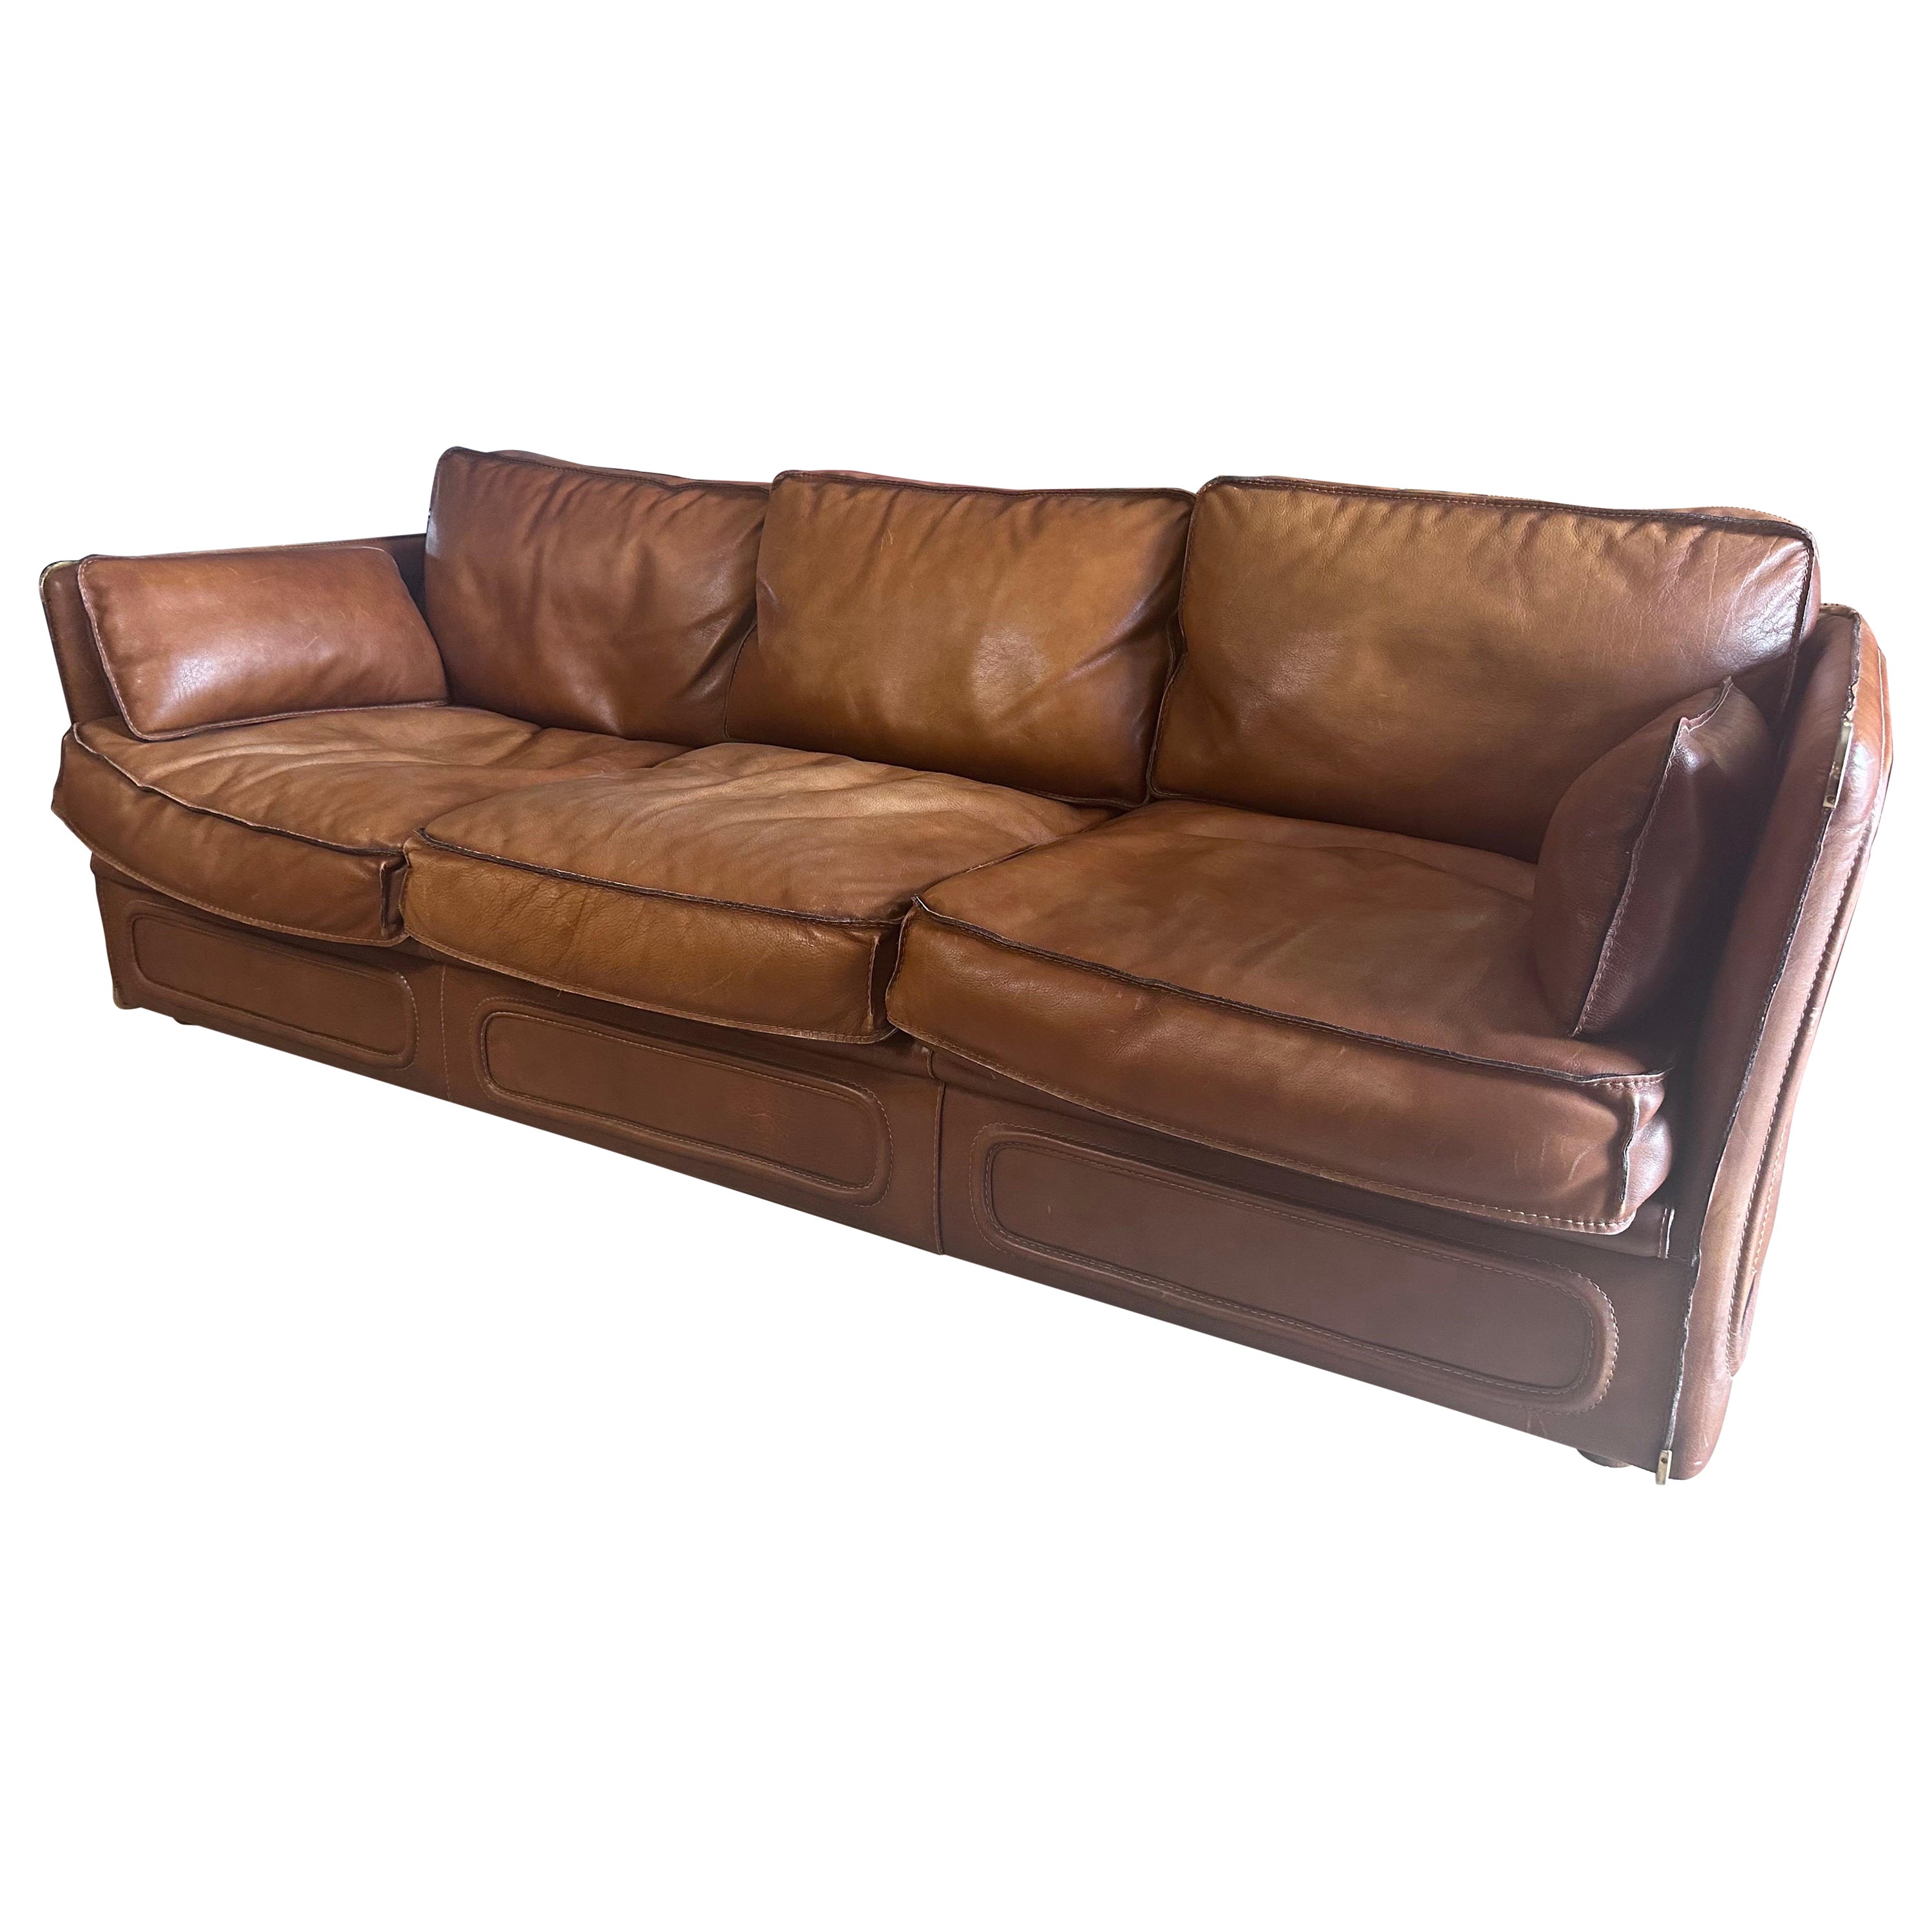 Leather Roche Bobois sofa For Sale